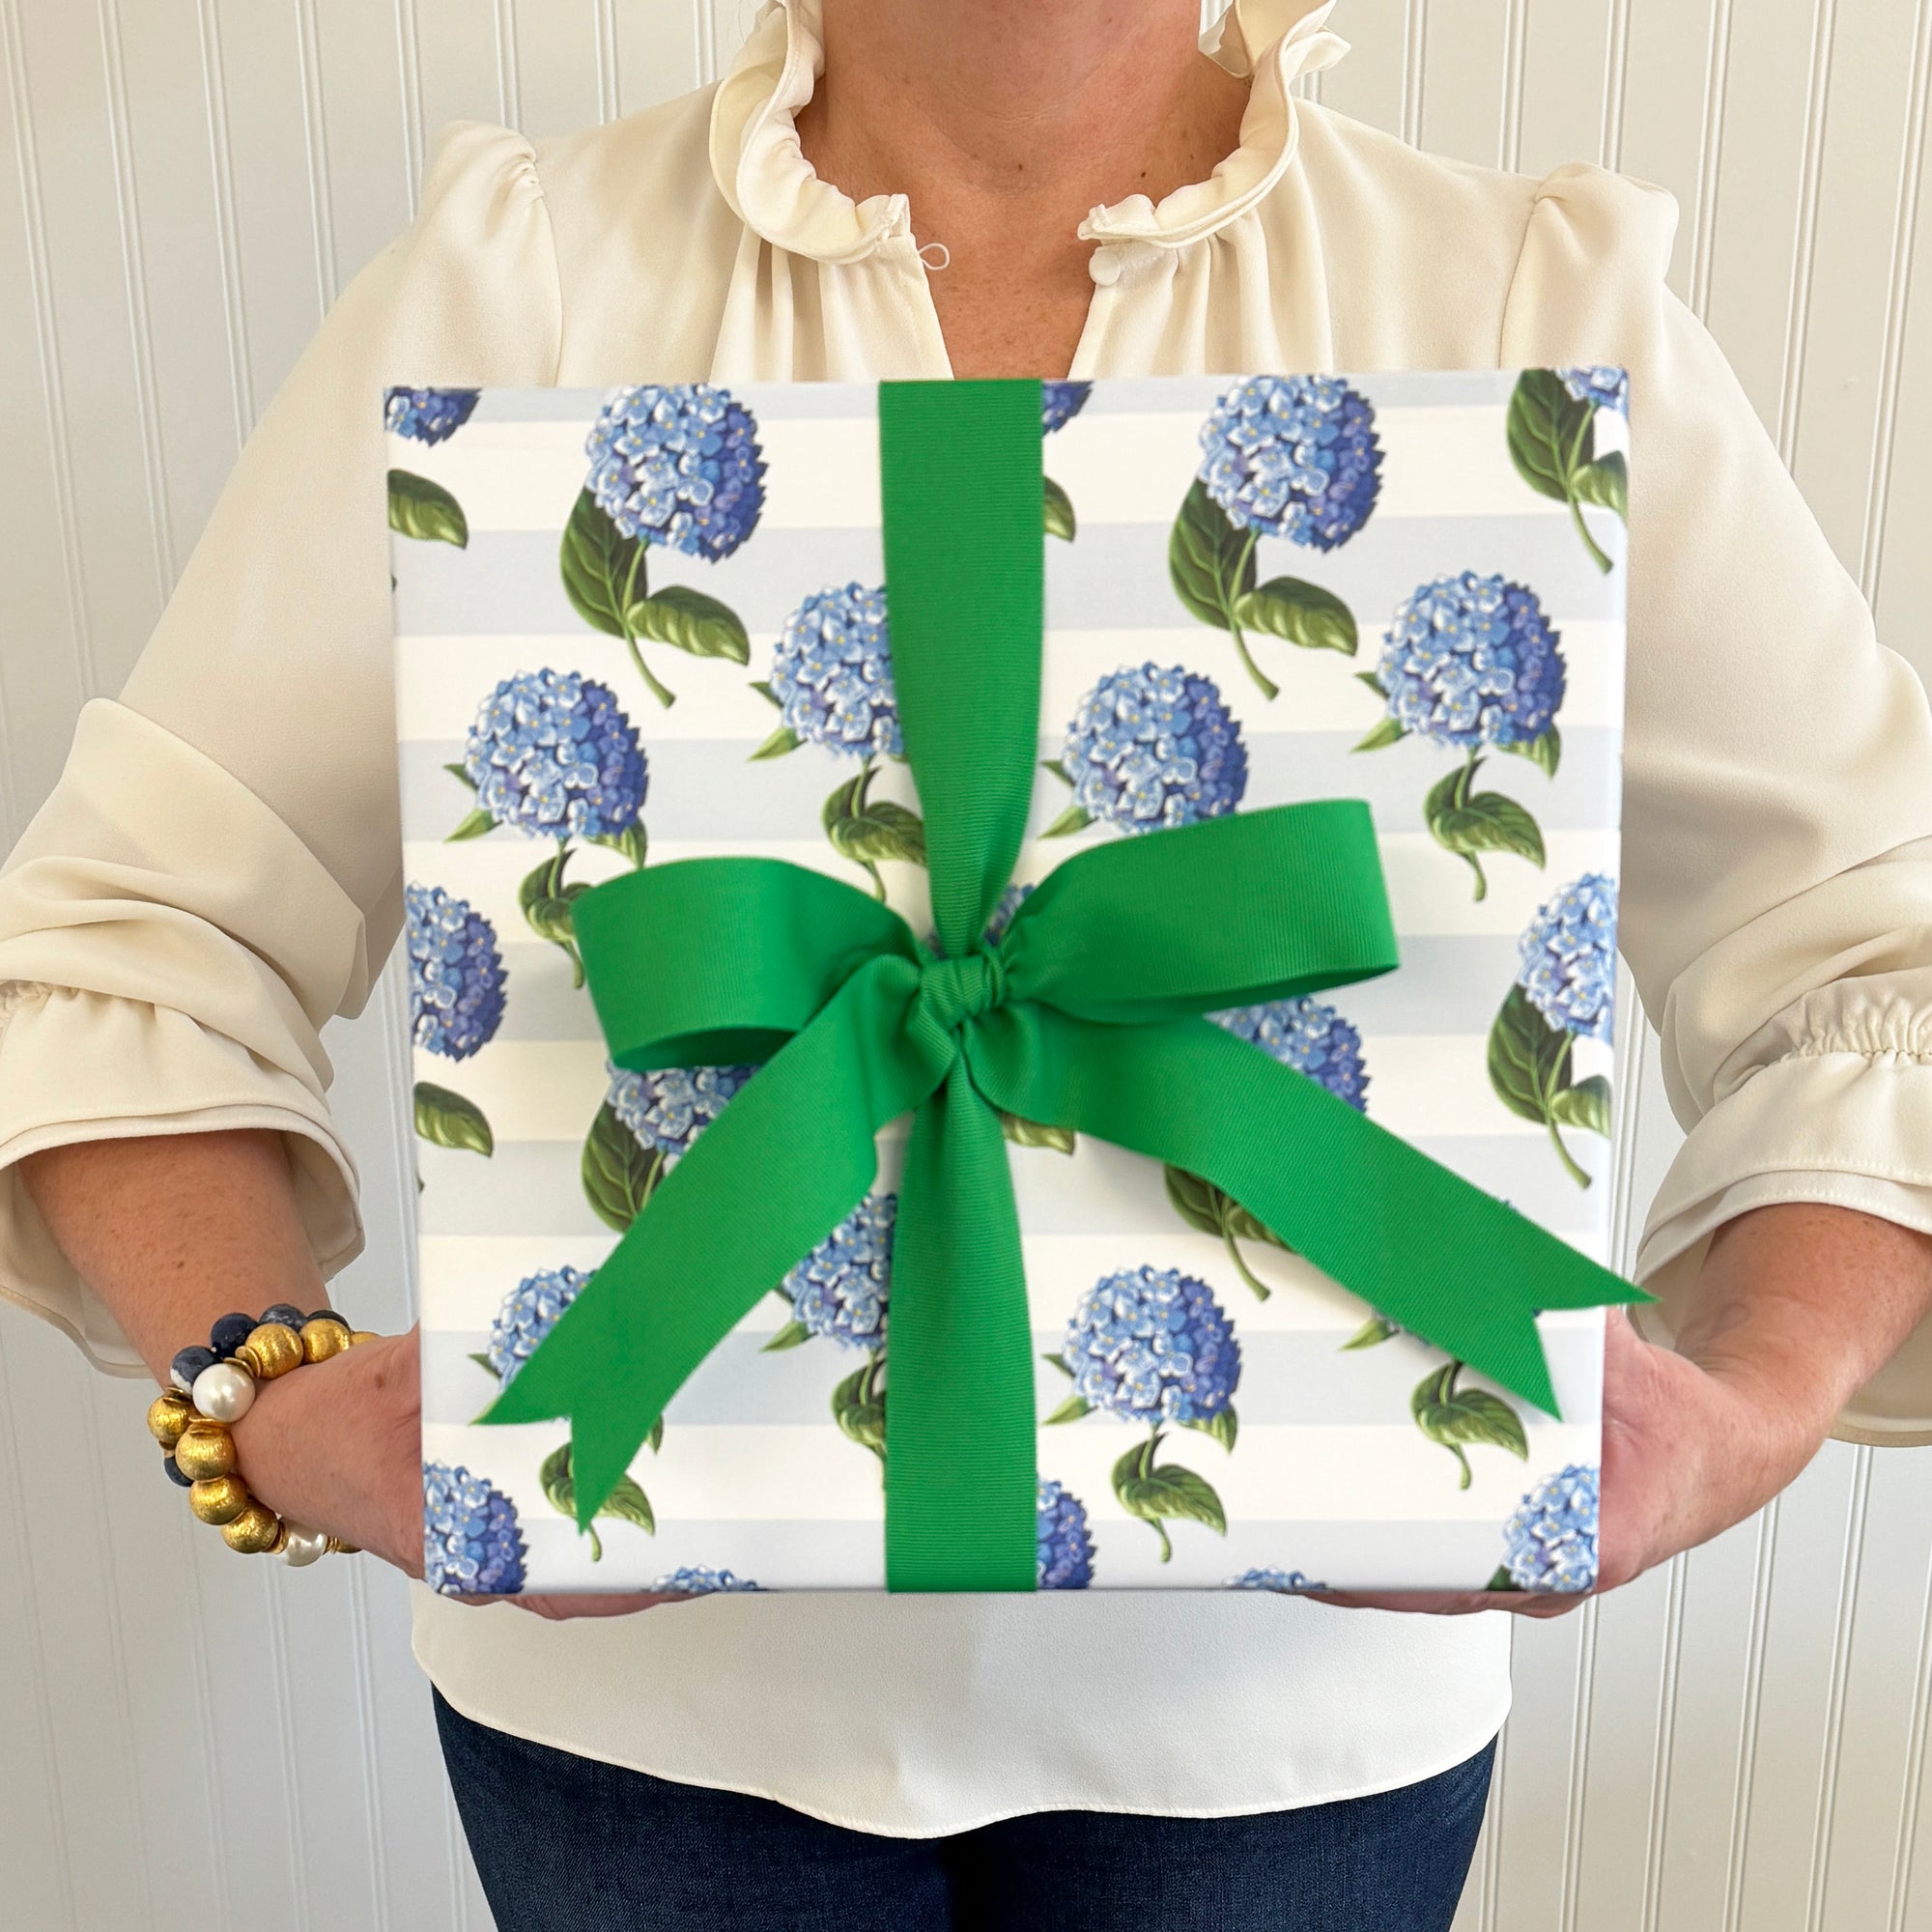 Blue Hydrangeas Stripe Gift Wrap Sheets